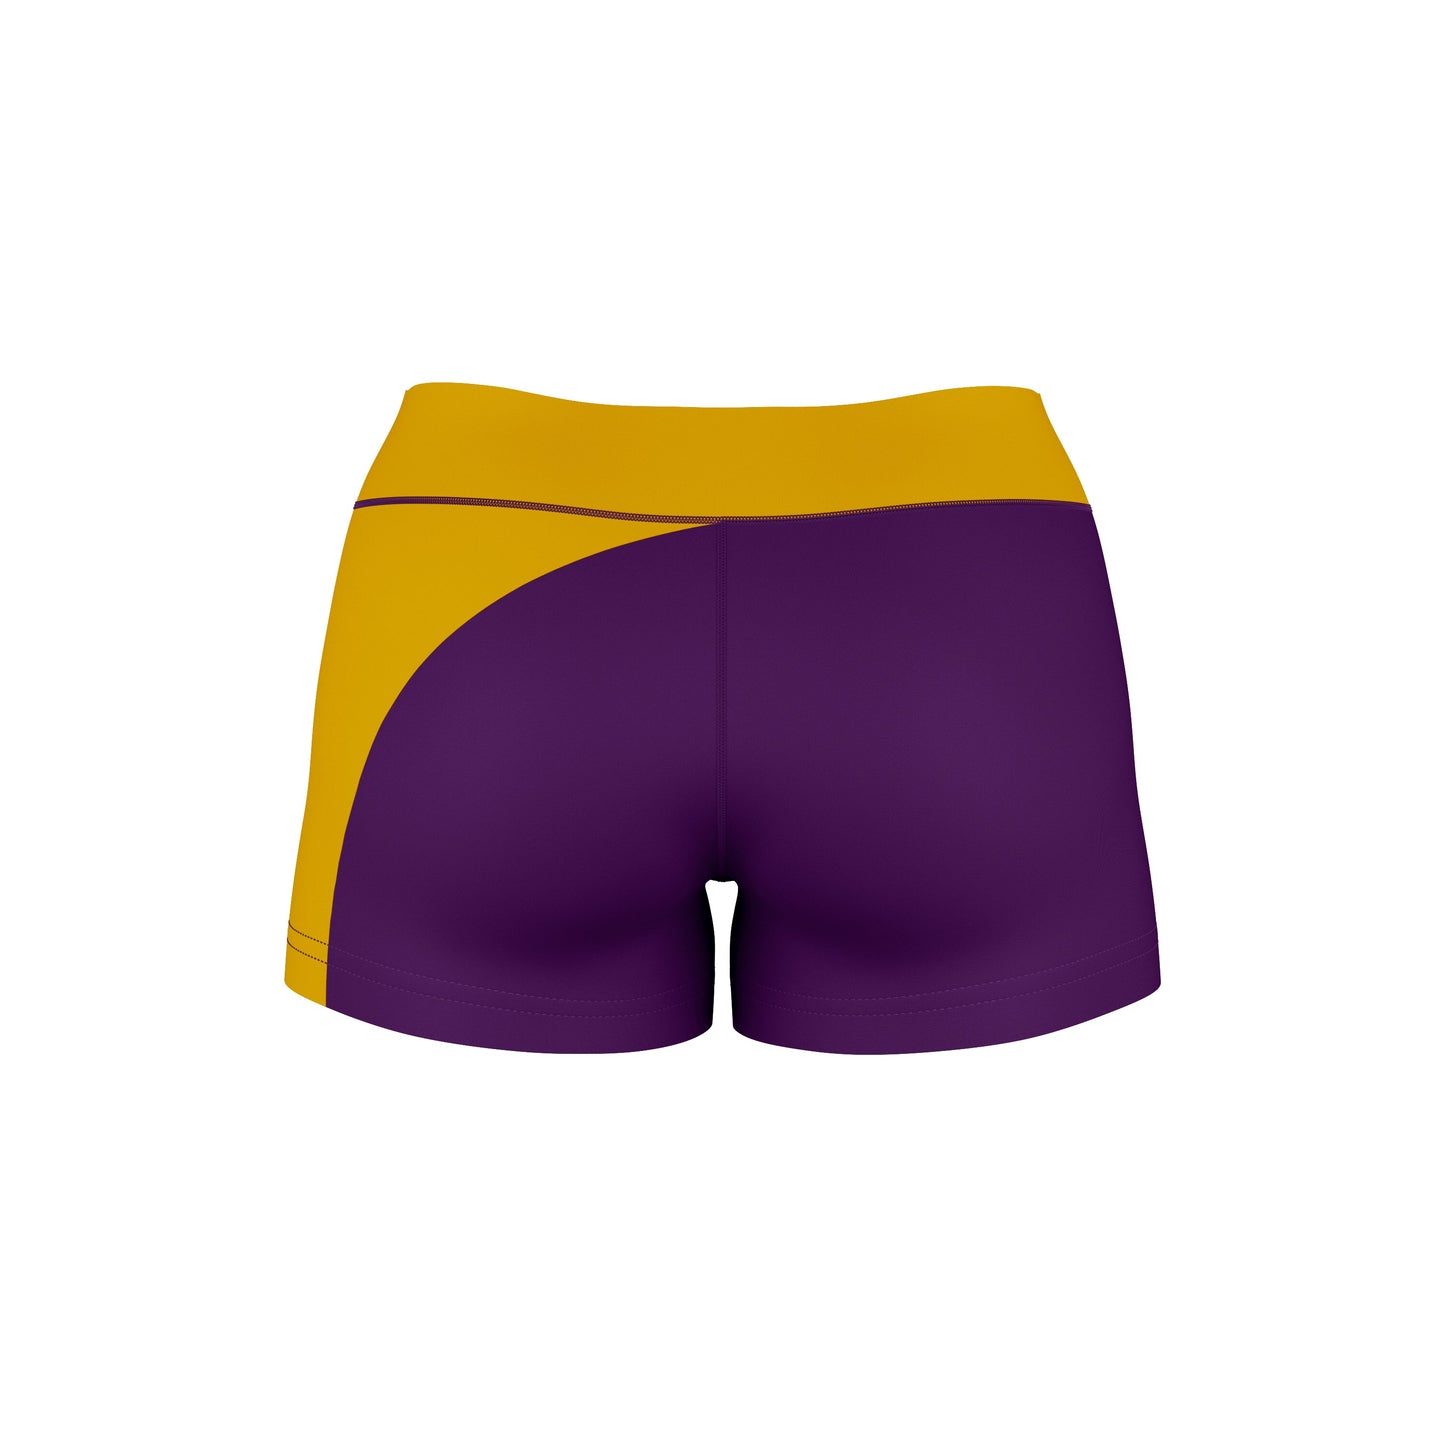 LSU Tigers Vive La Fete Game Day Collegiate Waist Color Block Women Purple Gold Optimum Yoga Short - Vive La F̻te - Online Apparel Store